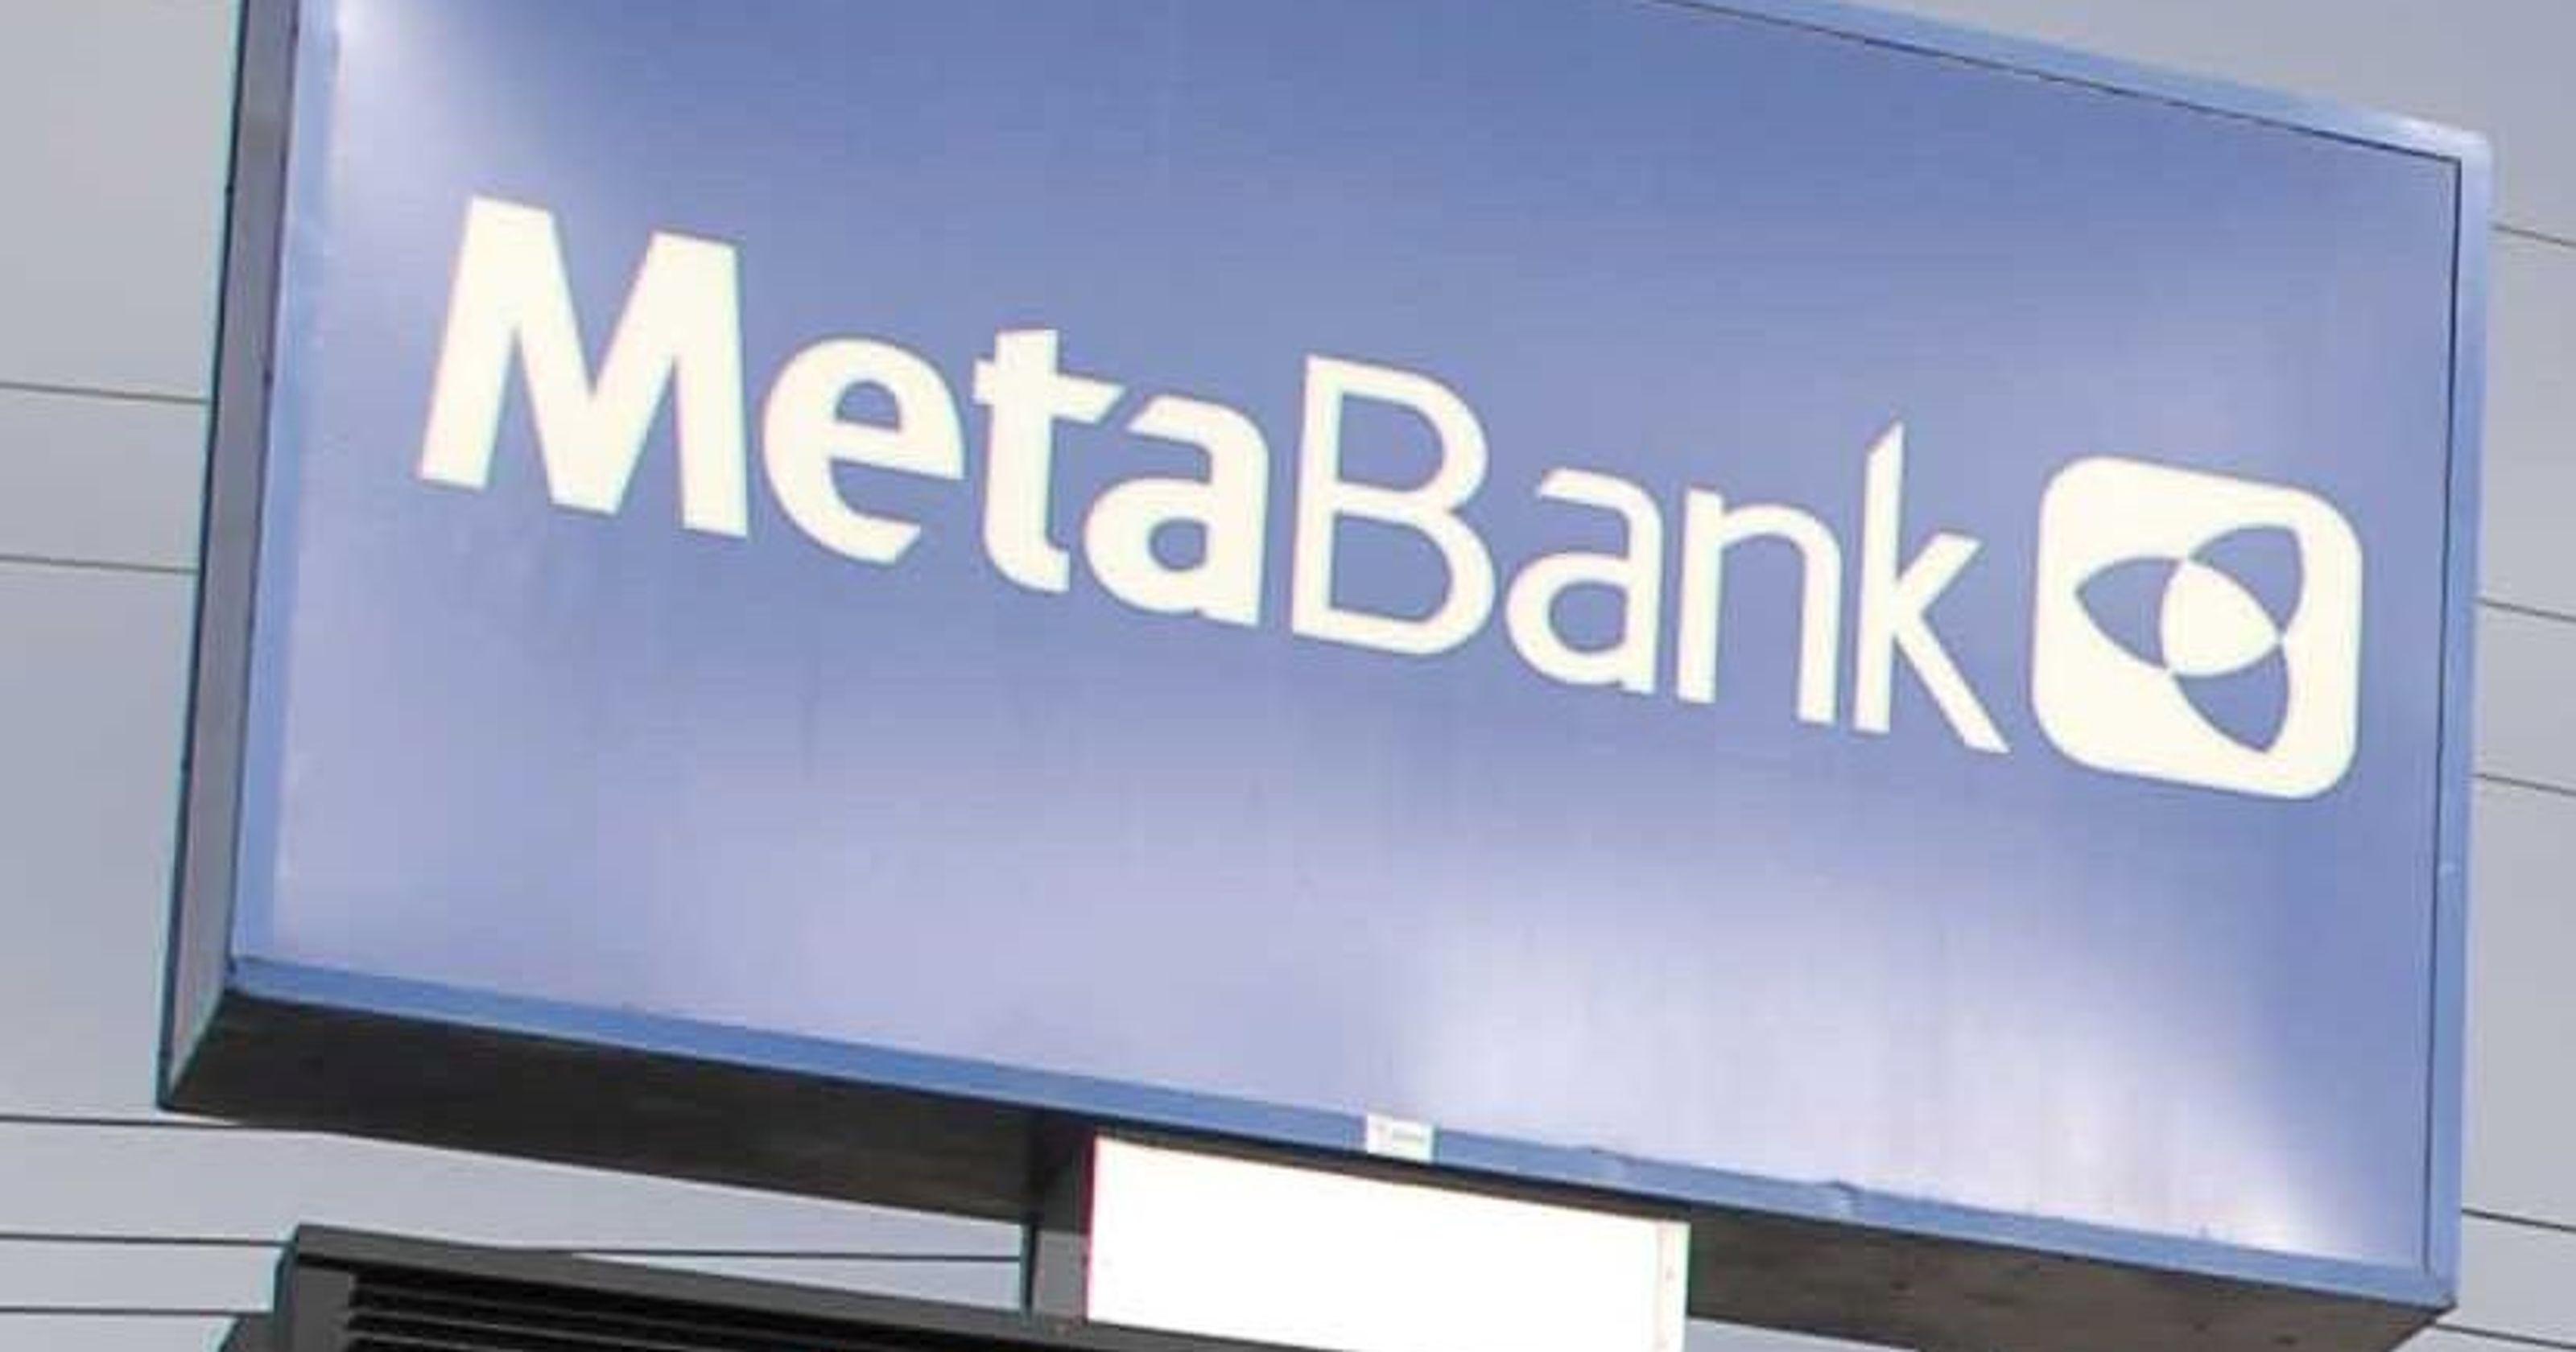 MetaBank Logo - MetaBank to buy insurance premium finance company